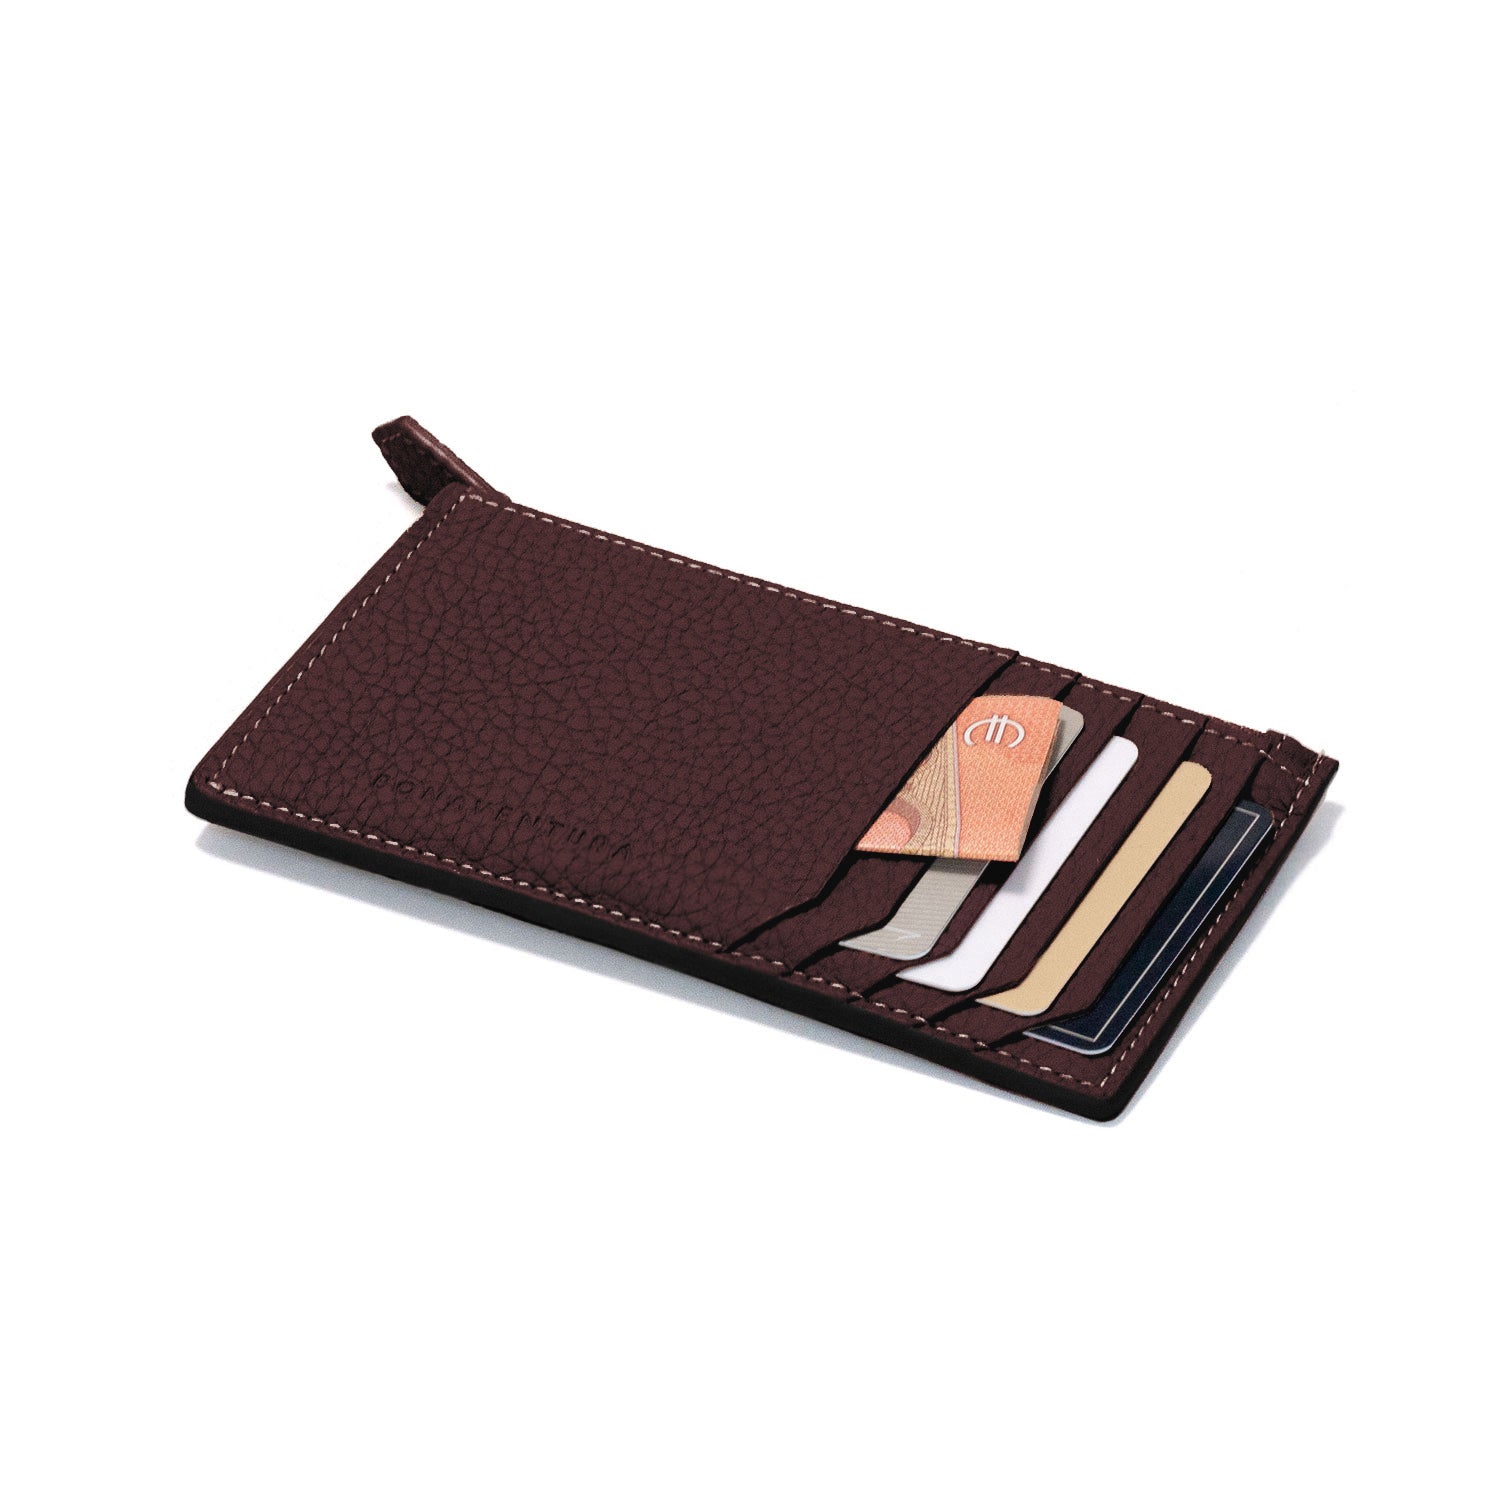 Mini zip wallet in shrunk leather